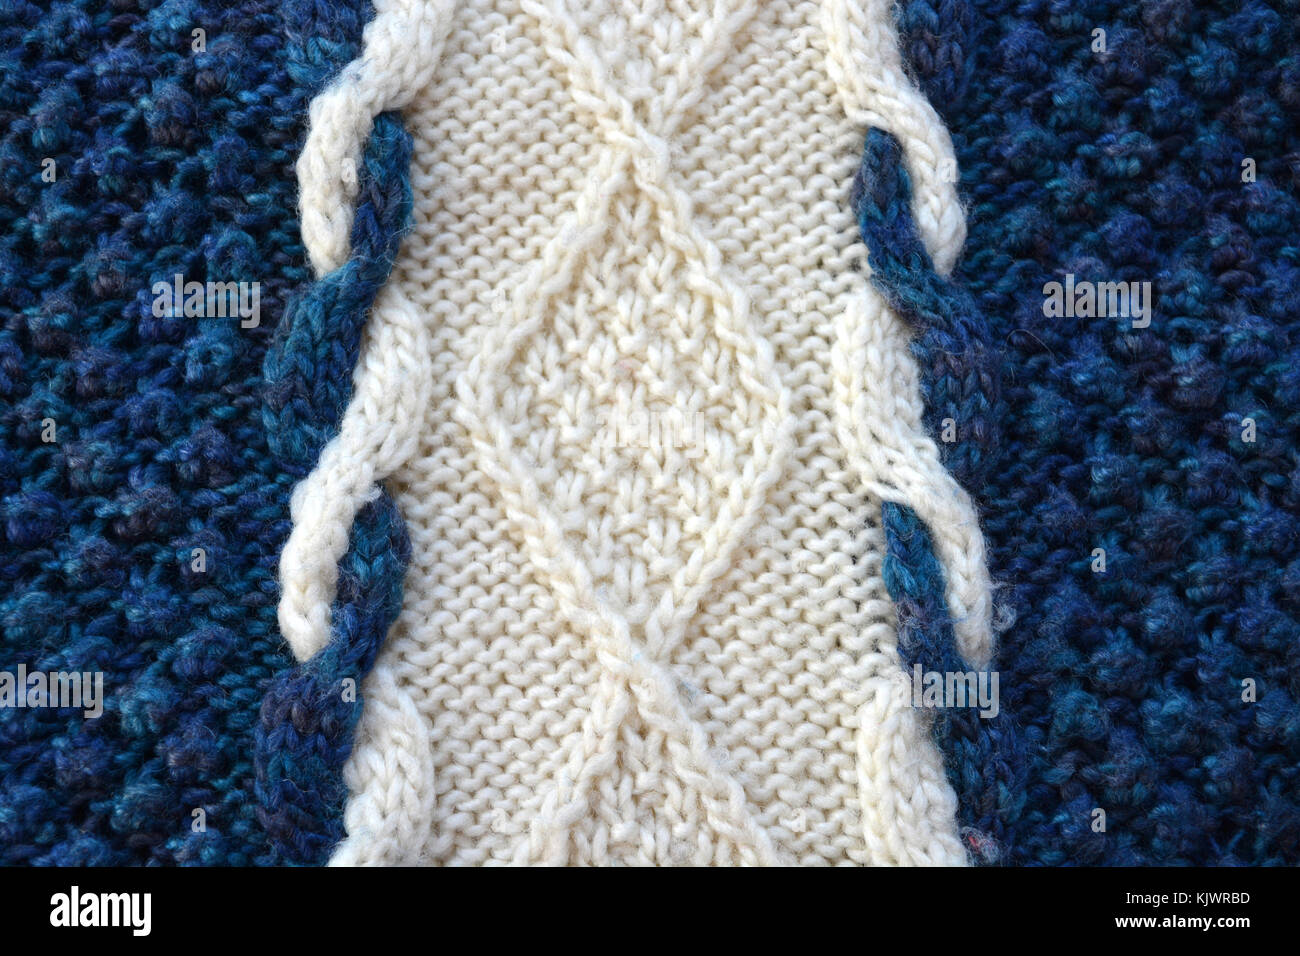 Detalle de un jersey de lana tejida a mano, Foto de stock